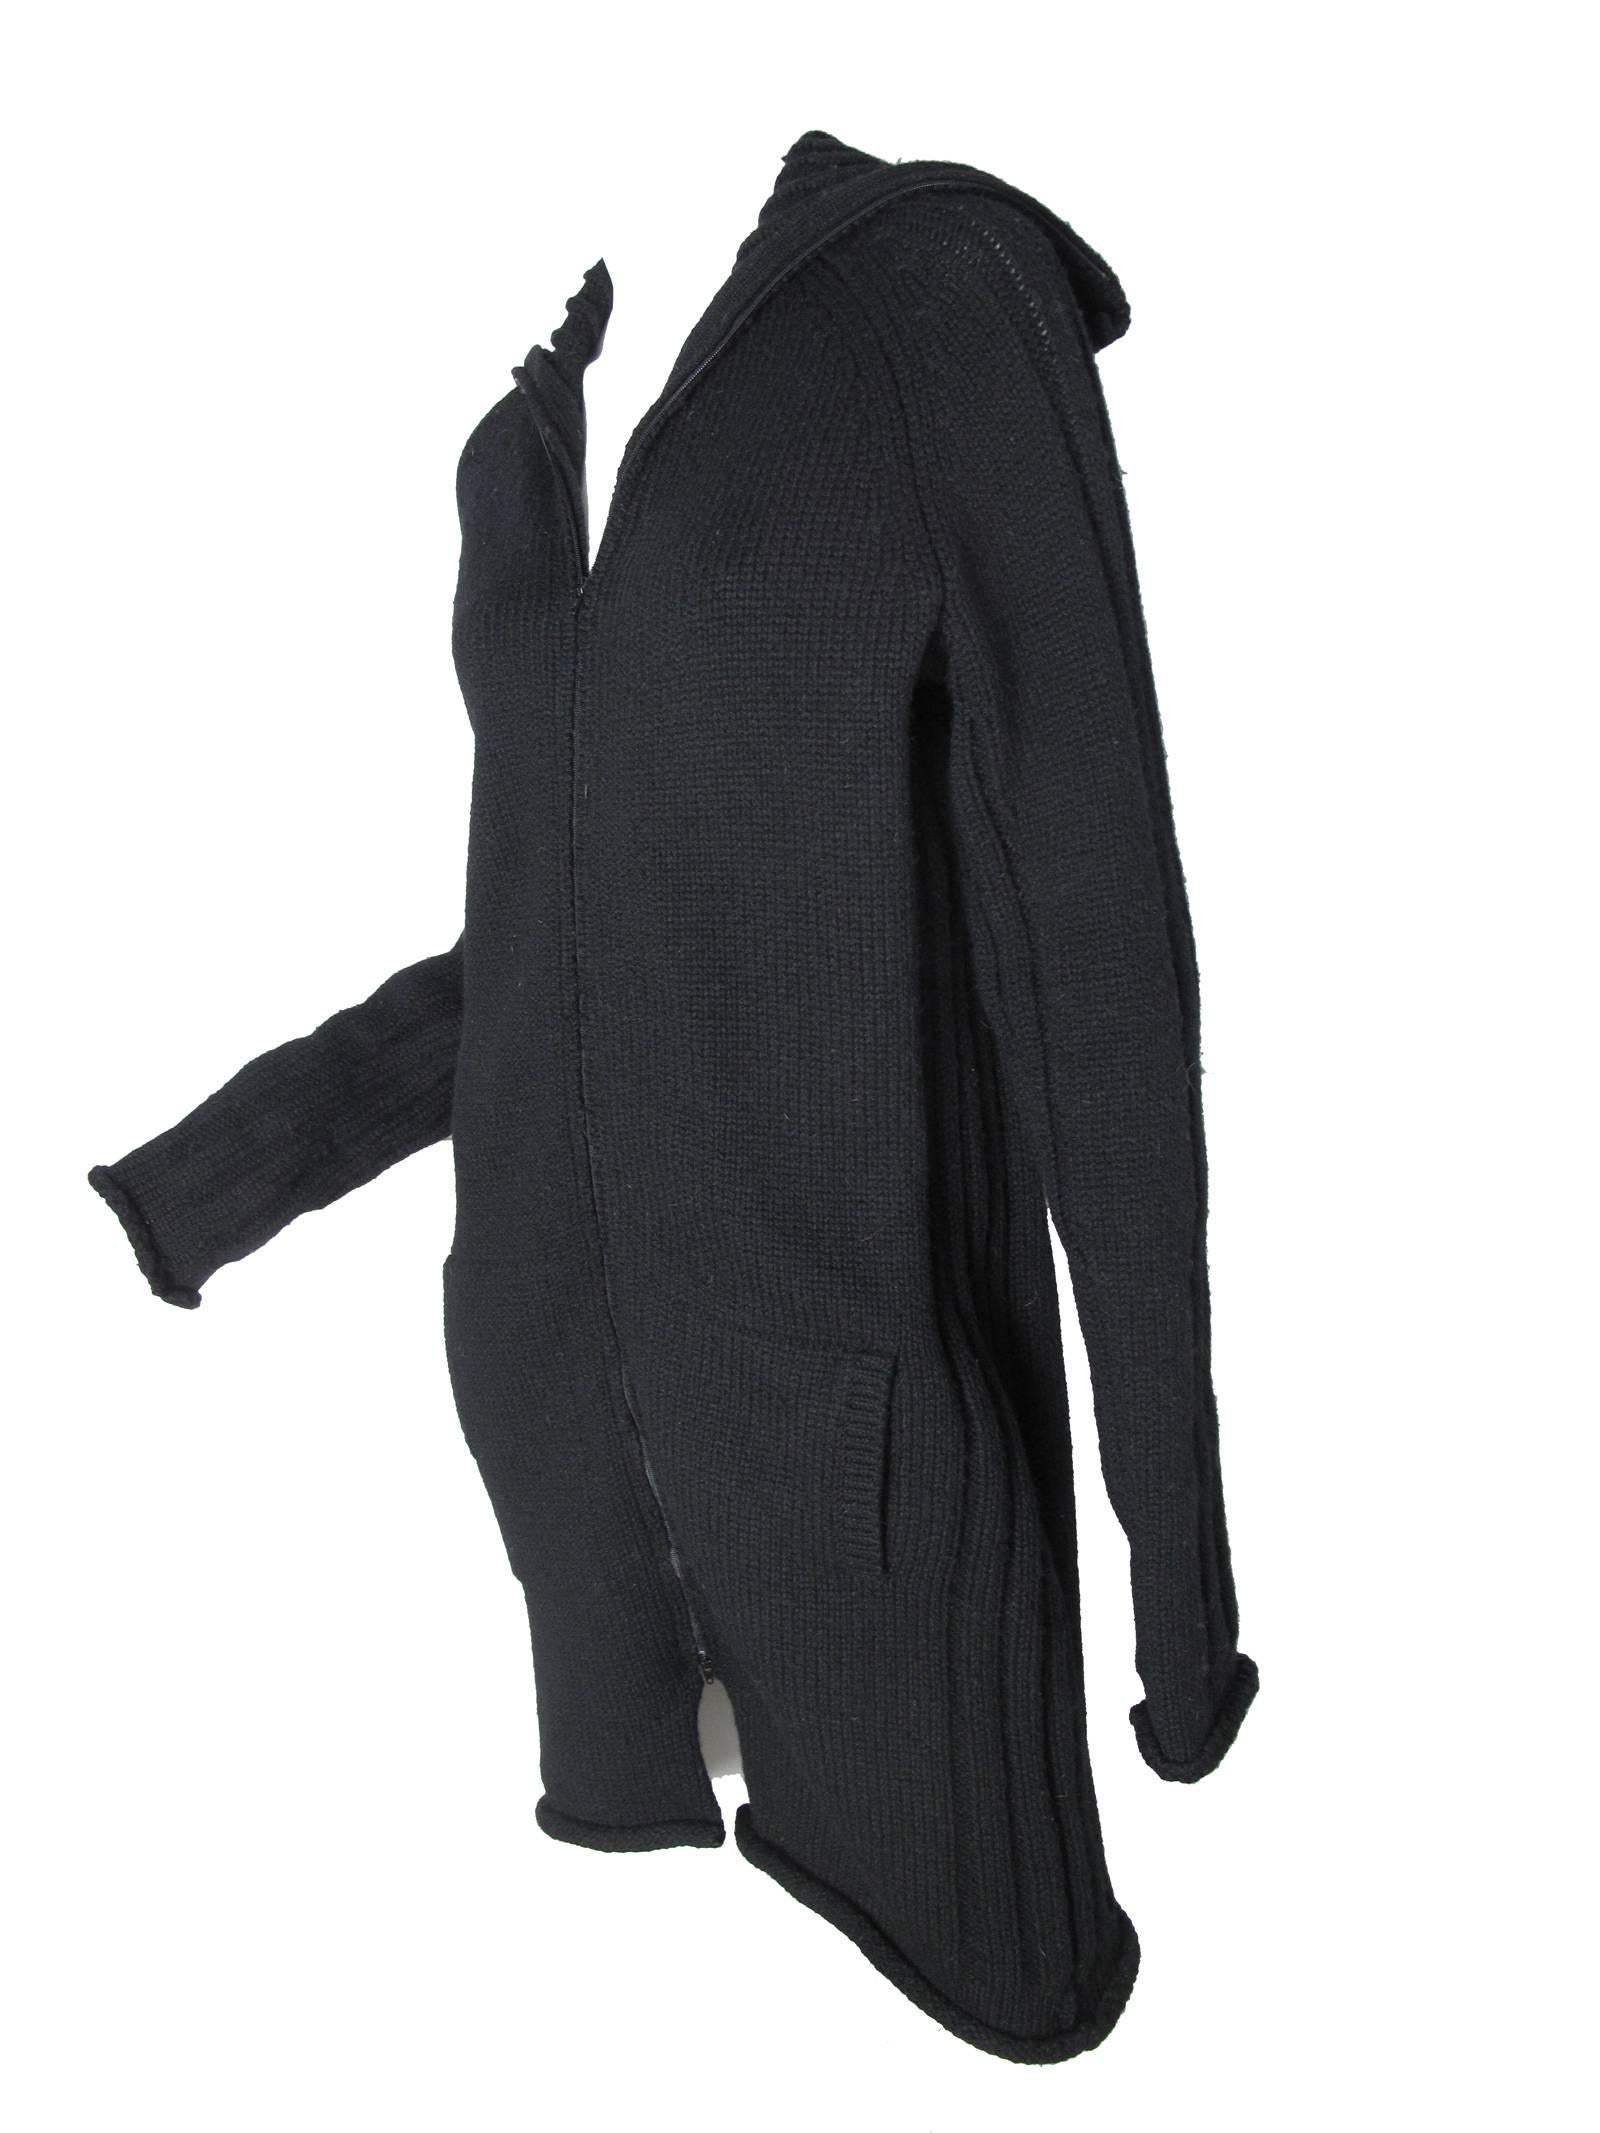 Yohji Yamamoto black wool oversized chunky cardigan, zipper up front.  Condition: Very good. Size 3
40